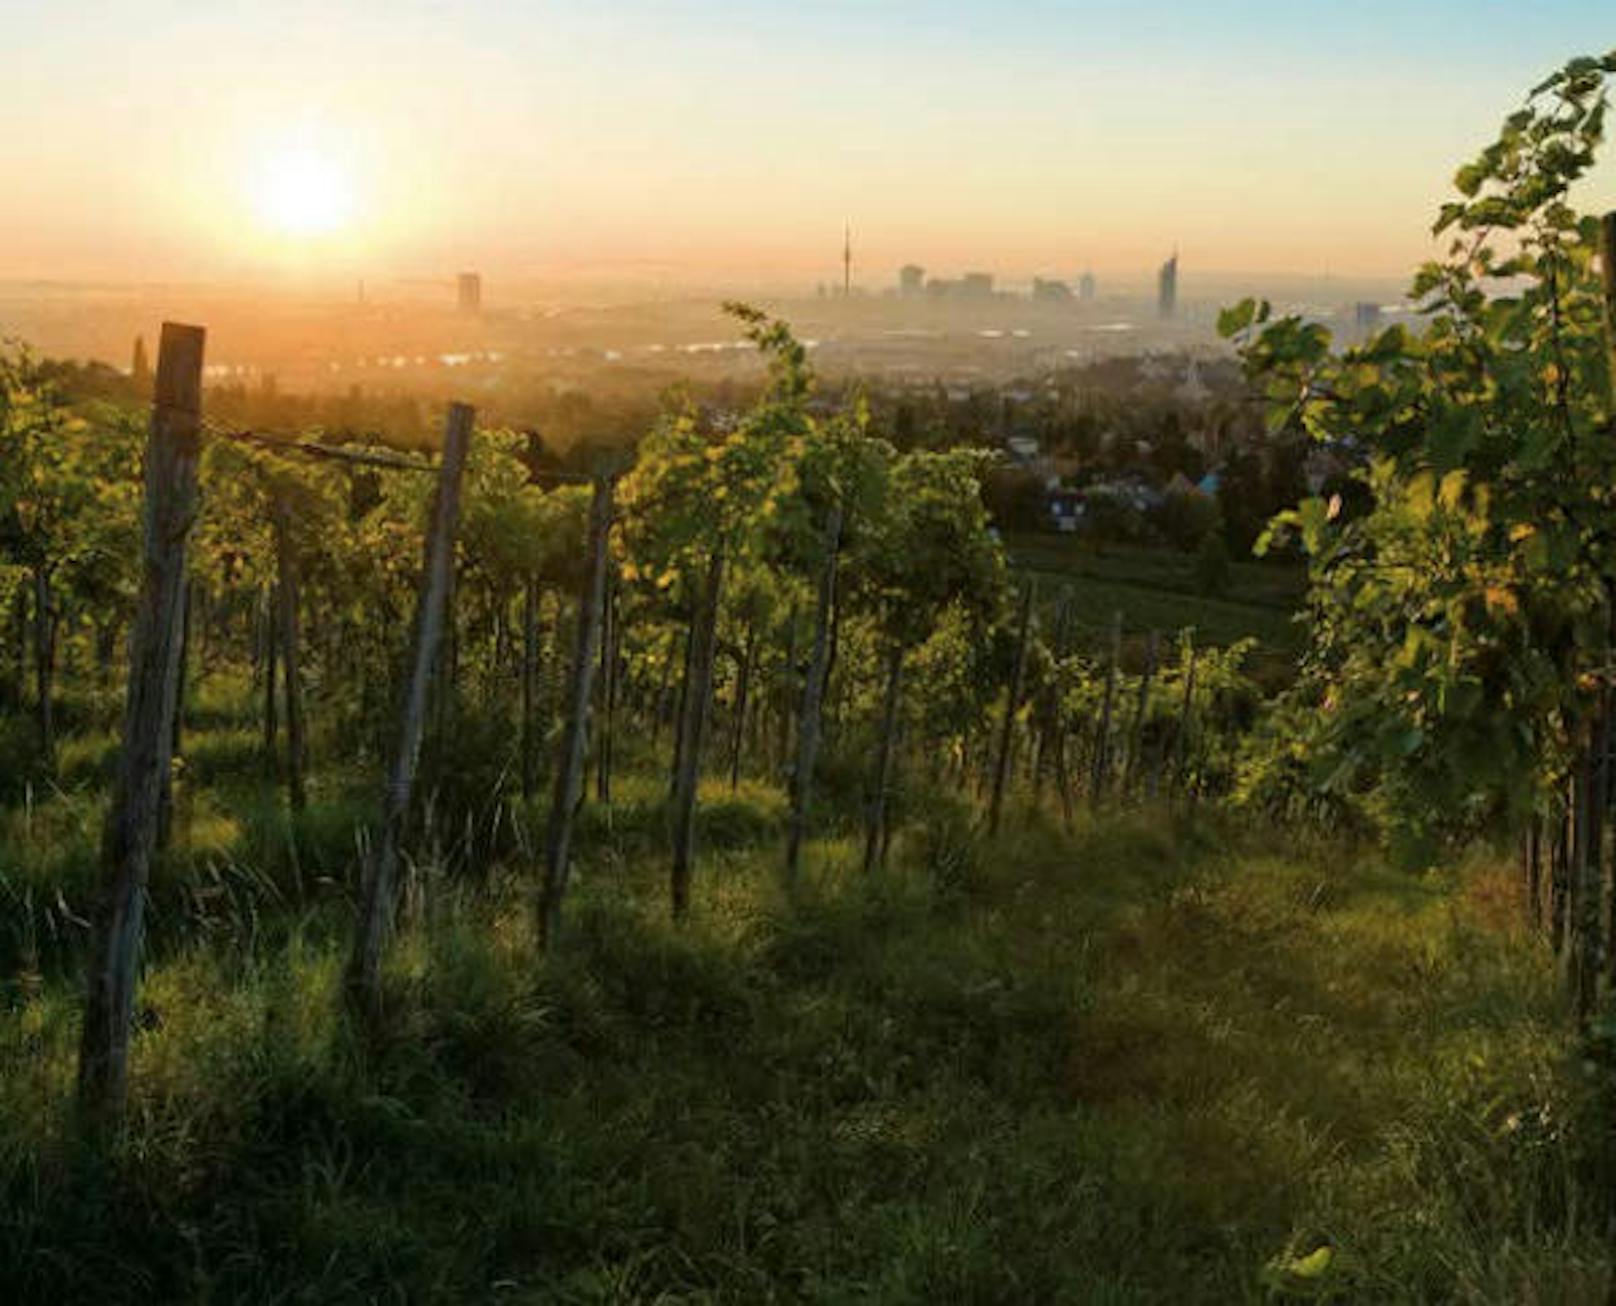 Einzigartig für eine Großstadt verfügt Wien über 700 Hektar Weinbaugebiet. 190 Winzer bewirtschaften die Weingärten von Kahlenberg, Nussberg, Bisamberg und Mauer - wo die Donau und der nahe Wienerwald ein ideales Kleinklima schaffen.